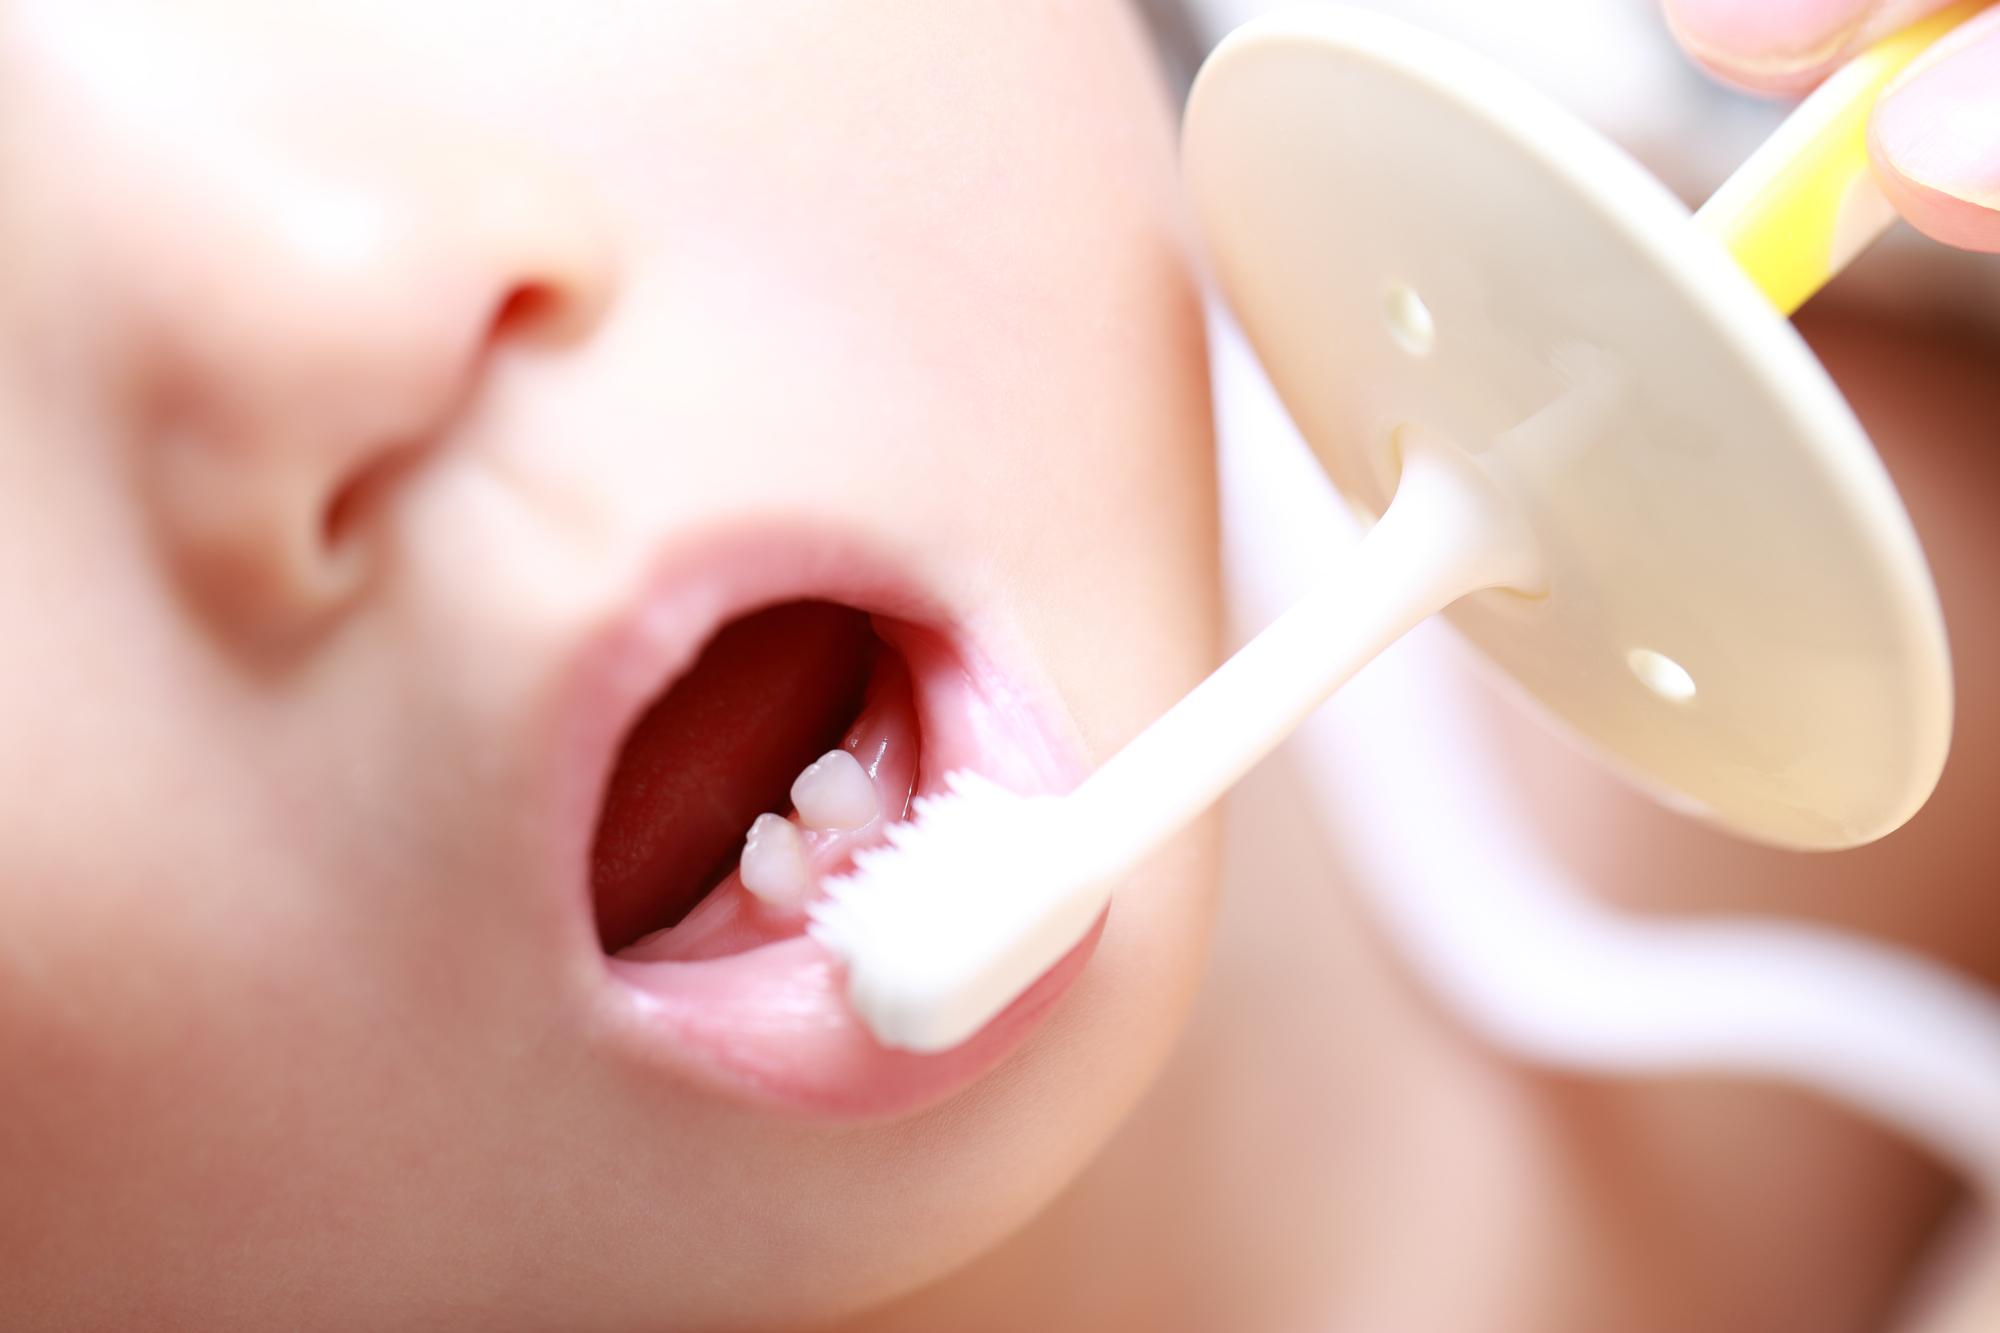 赤ちゃんの歯みがき 歯みがき粉は必要 おすすめの成分と選び方もまとめて紹介